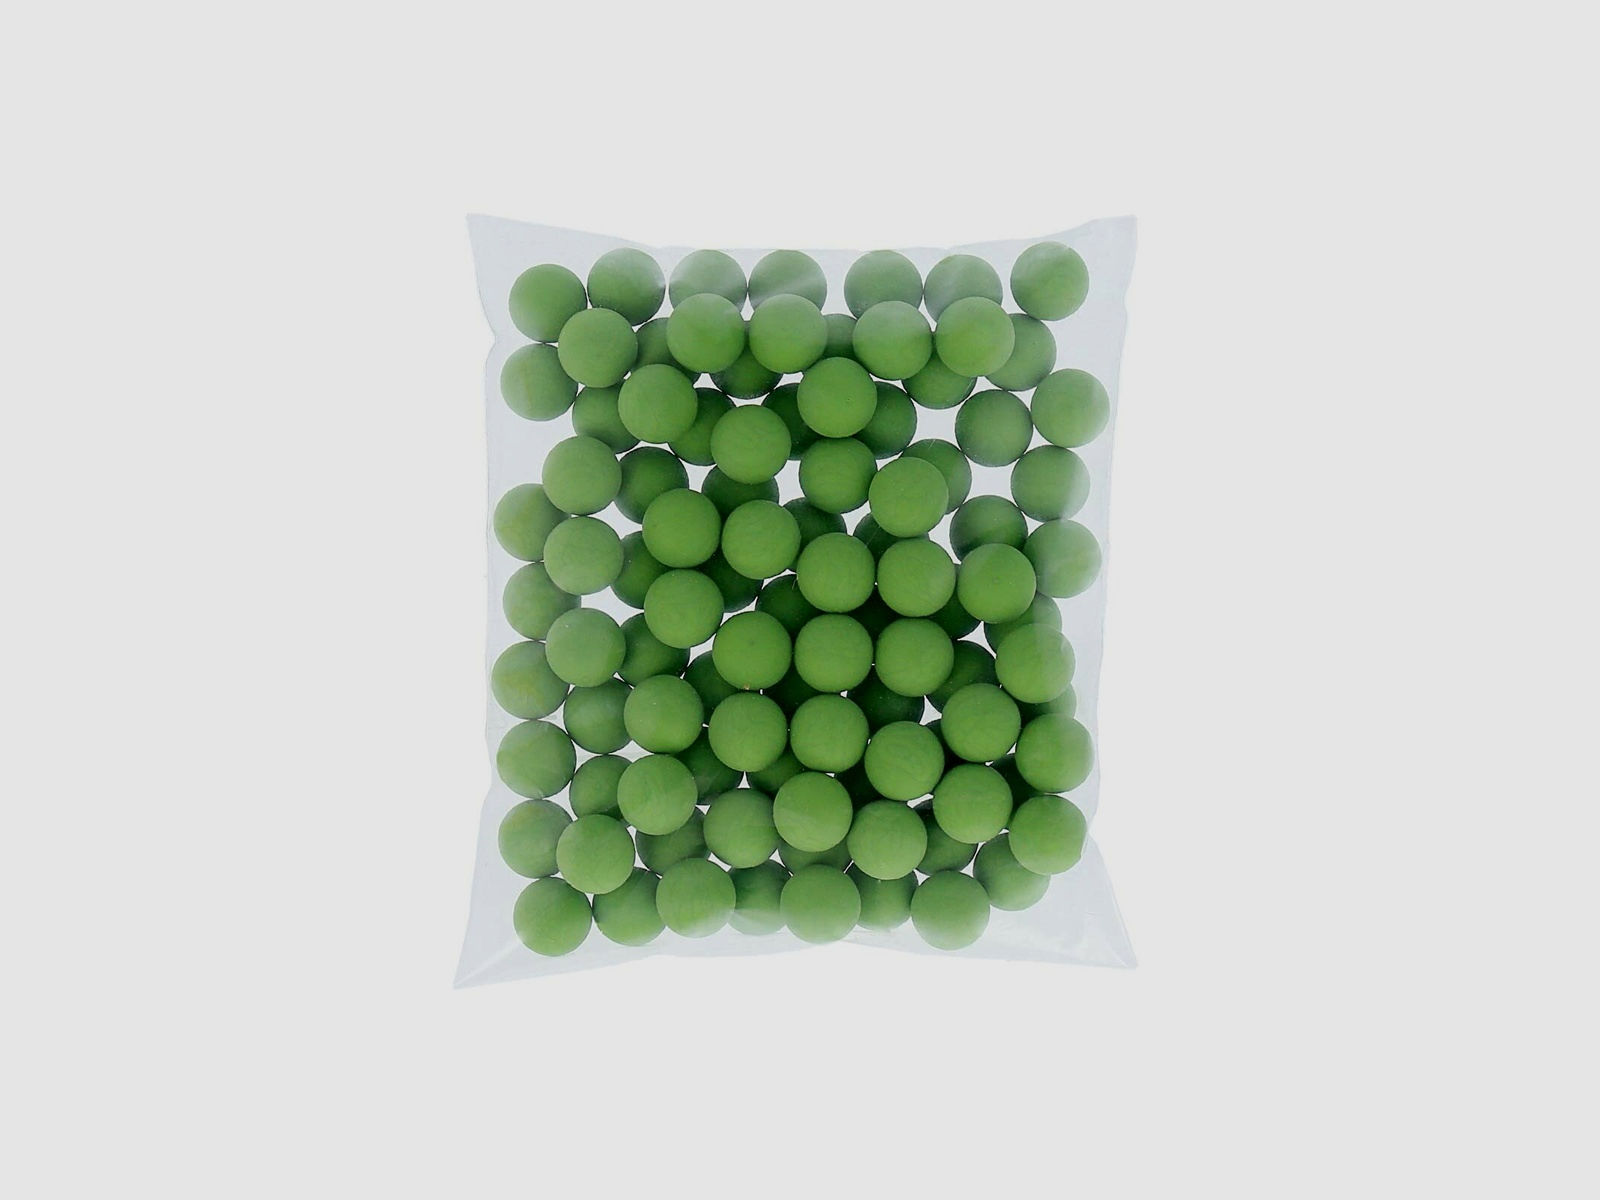 Rubberballs / Gummigeschosse Grün Kal .68 - 100 Stück